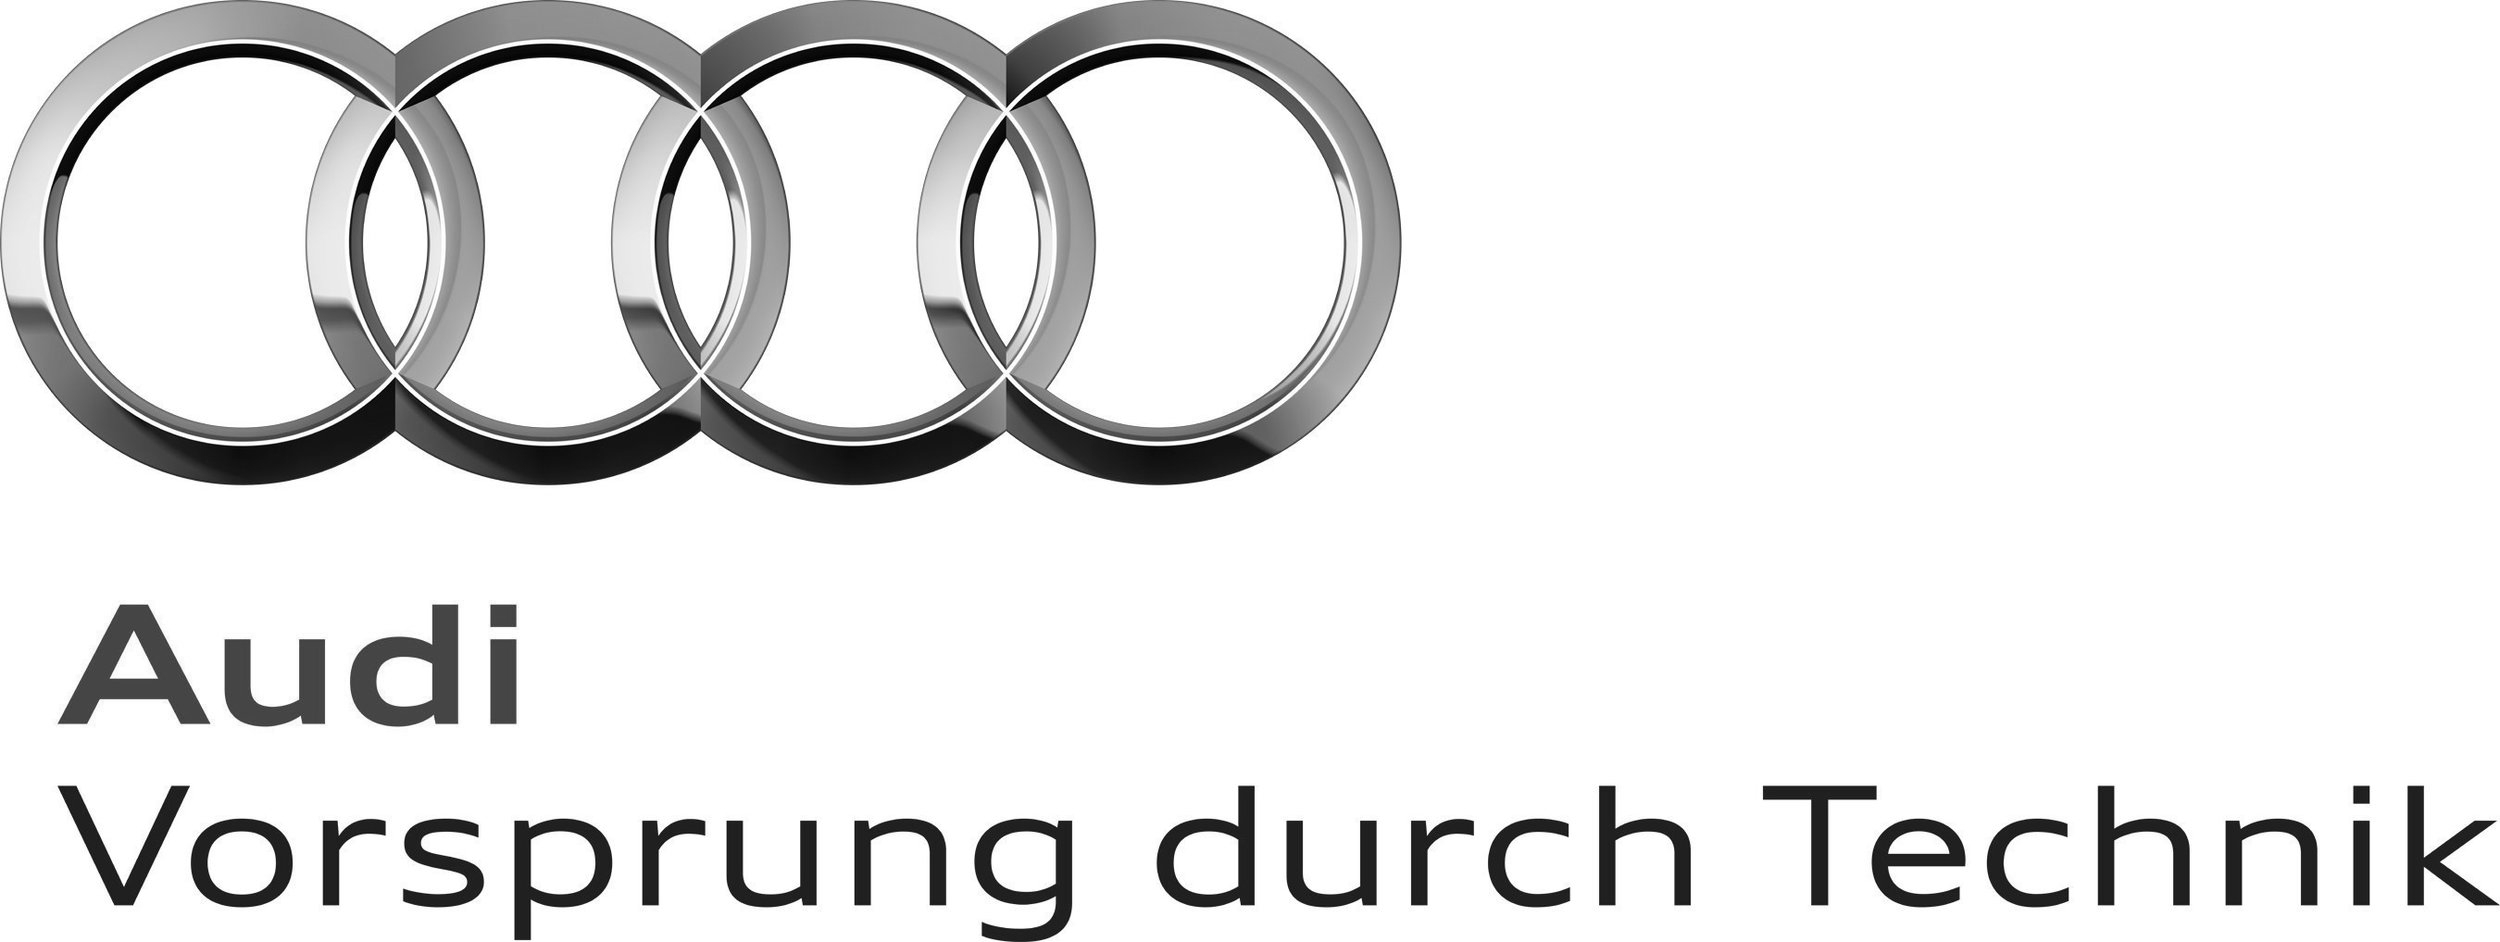 Audi VDT.jpg